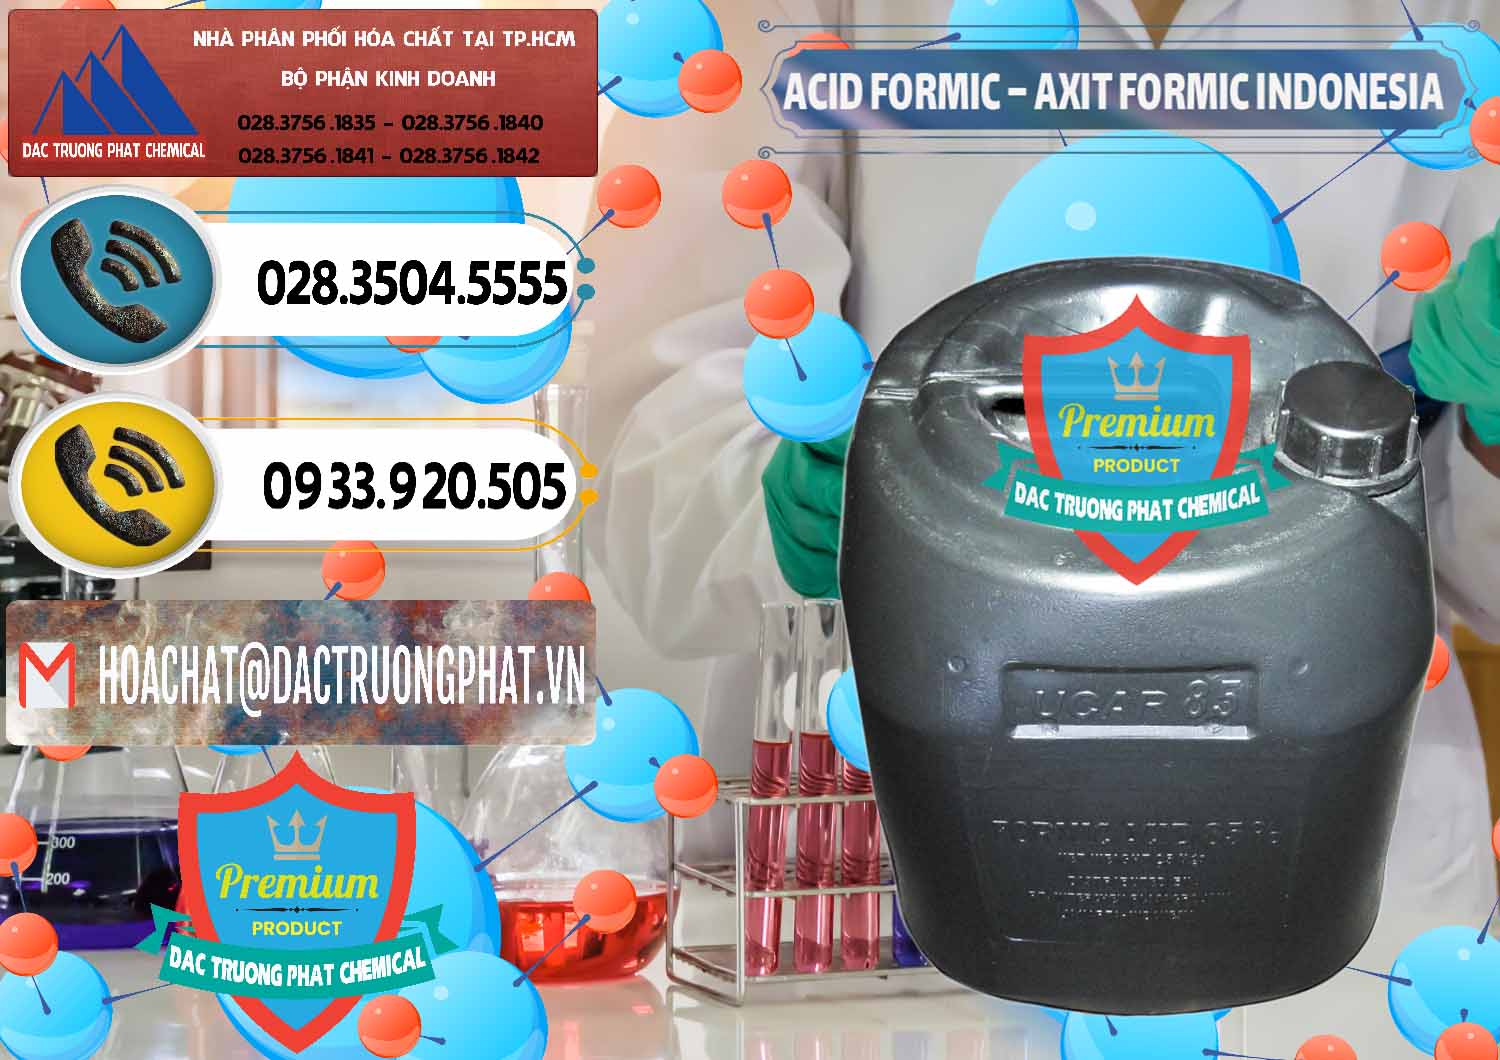 Đơn vị chuyên bán _ cung cấp Acid Formic - Axit Formic Indonesia - 0026 - Đơn vị chuyên cung cấp _ kinh doanh hóa chất tại TP.HCM - hoachatdetnhuom.vn